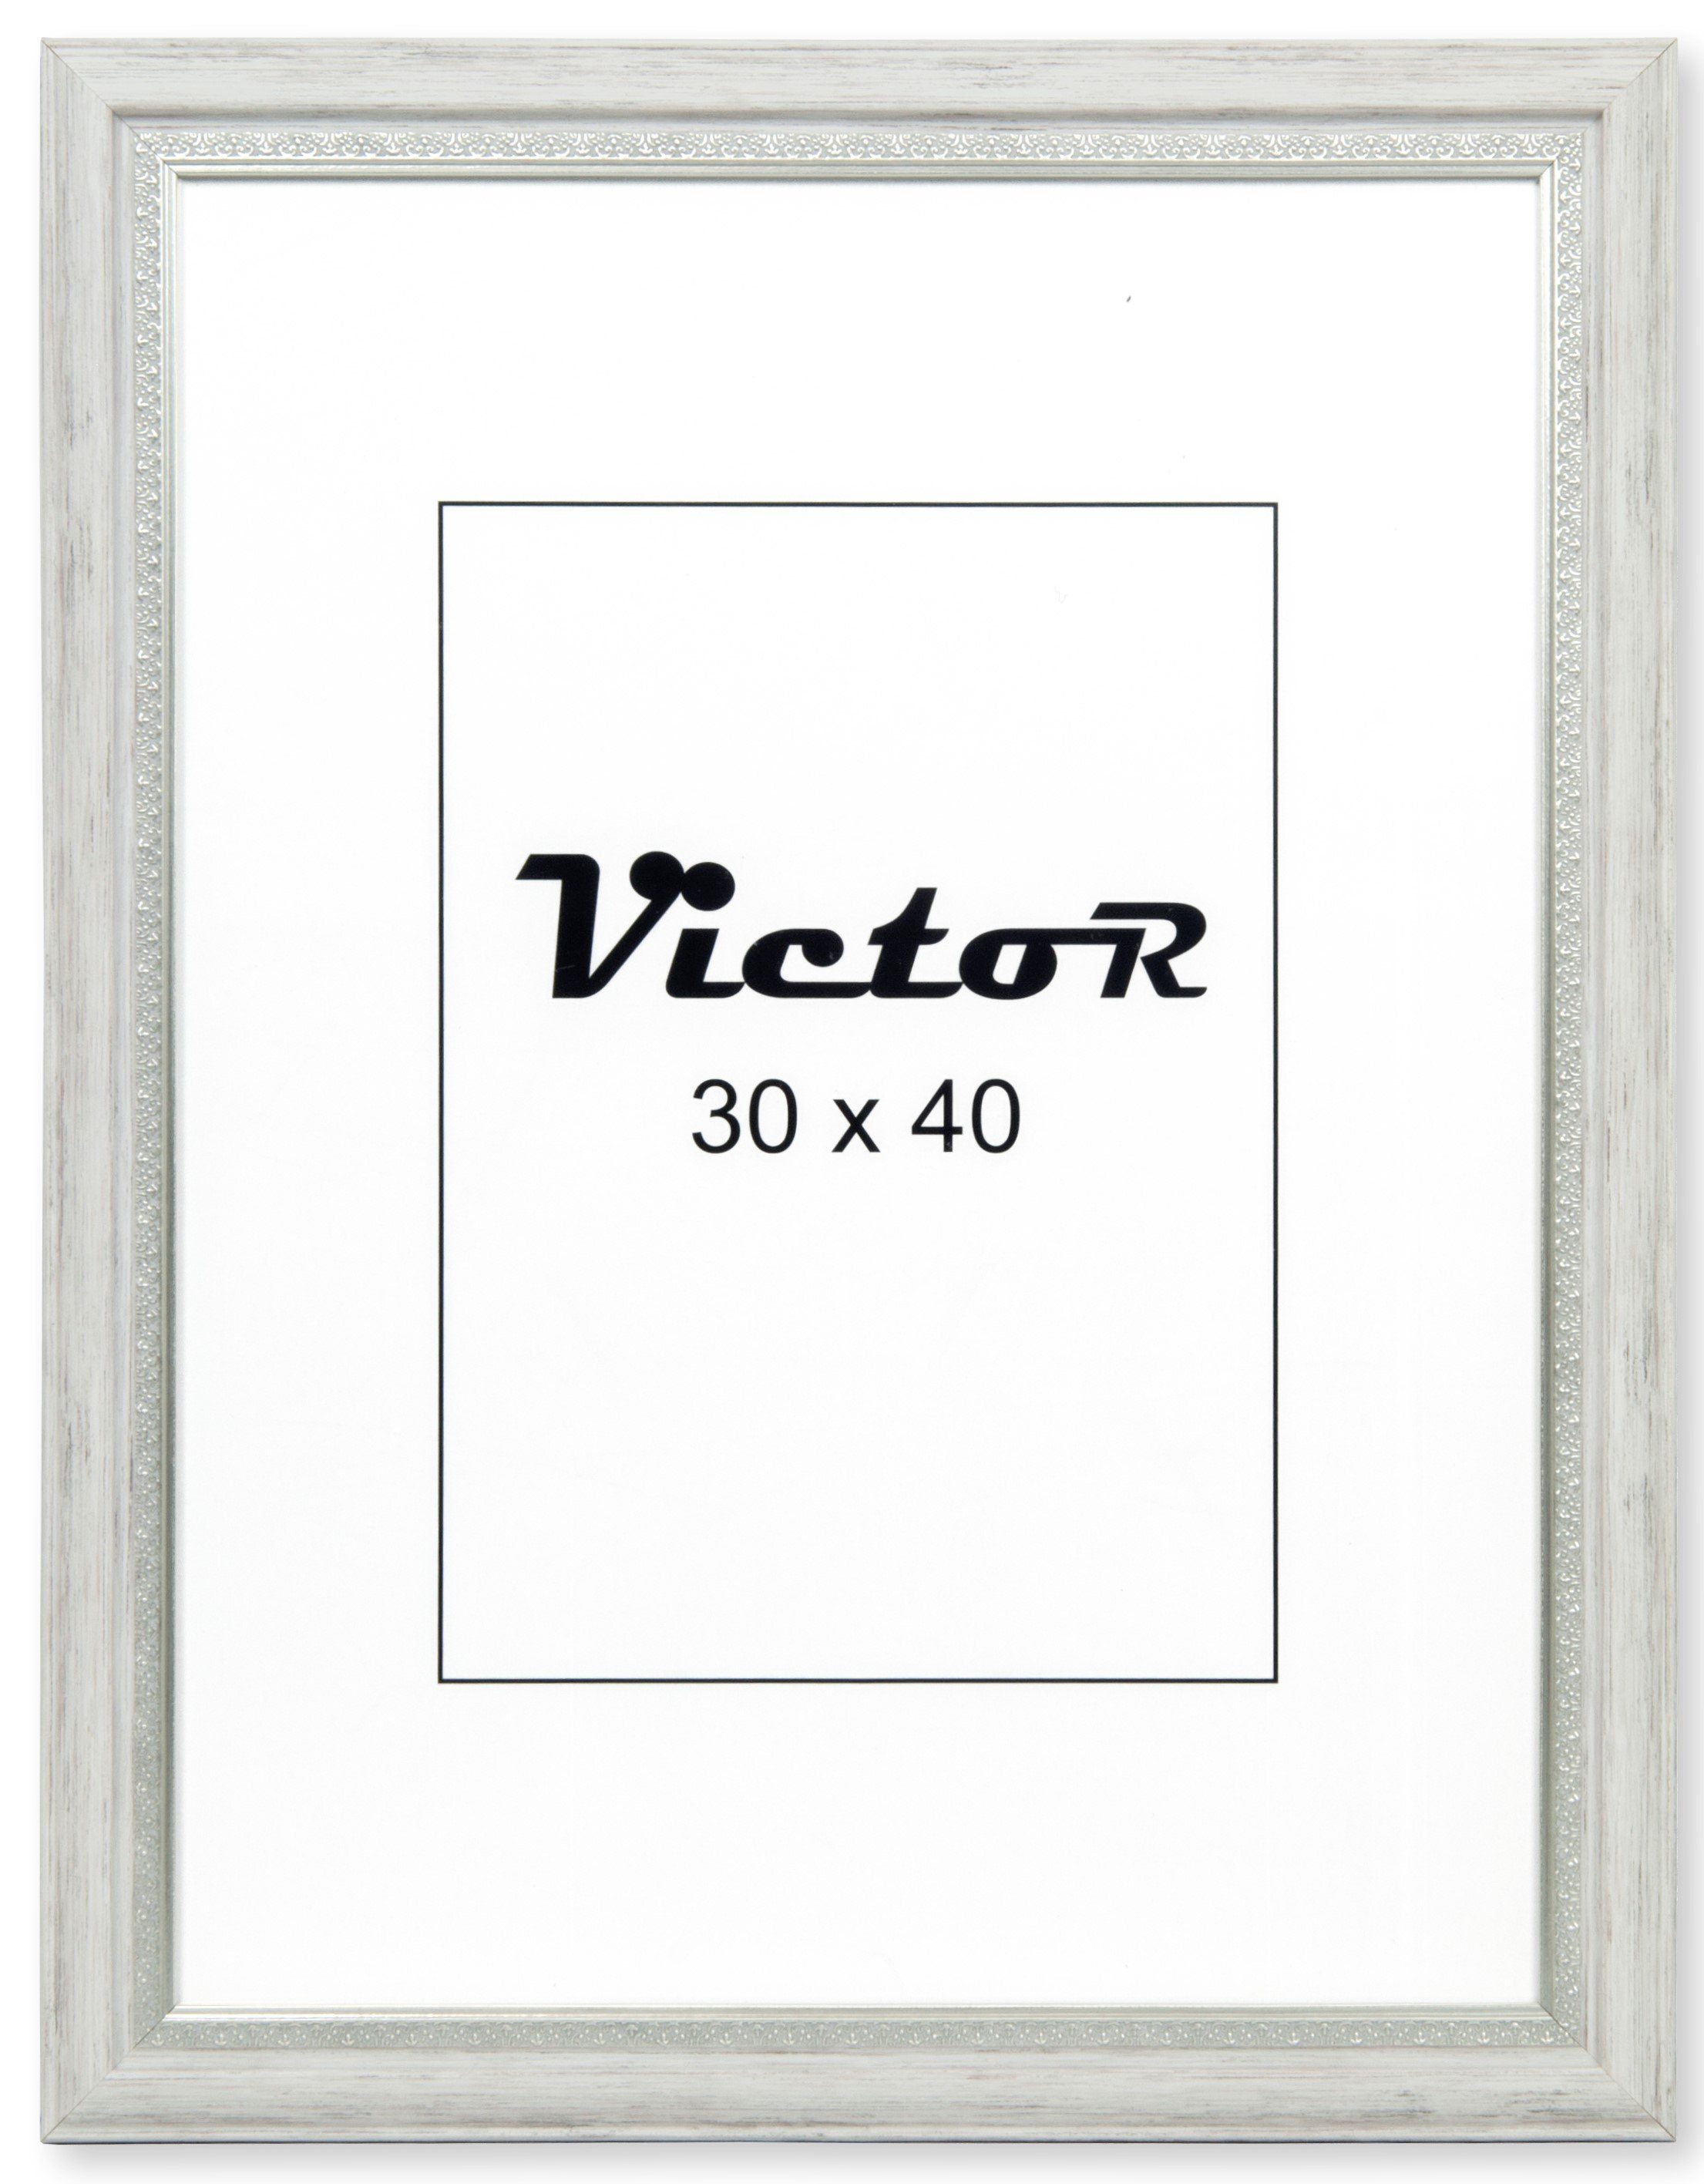 Victor (Zenith) Bilderrahmen Bilderrahmen \"Boho\" - Farbe: Weiß - Größe: 30 x 40 cm, Bilderrahmen Weiß 30x40 cm (A3), Bilderrahmen Vintage, Landhaus